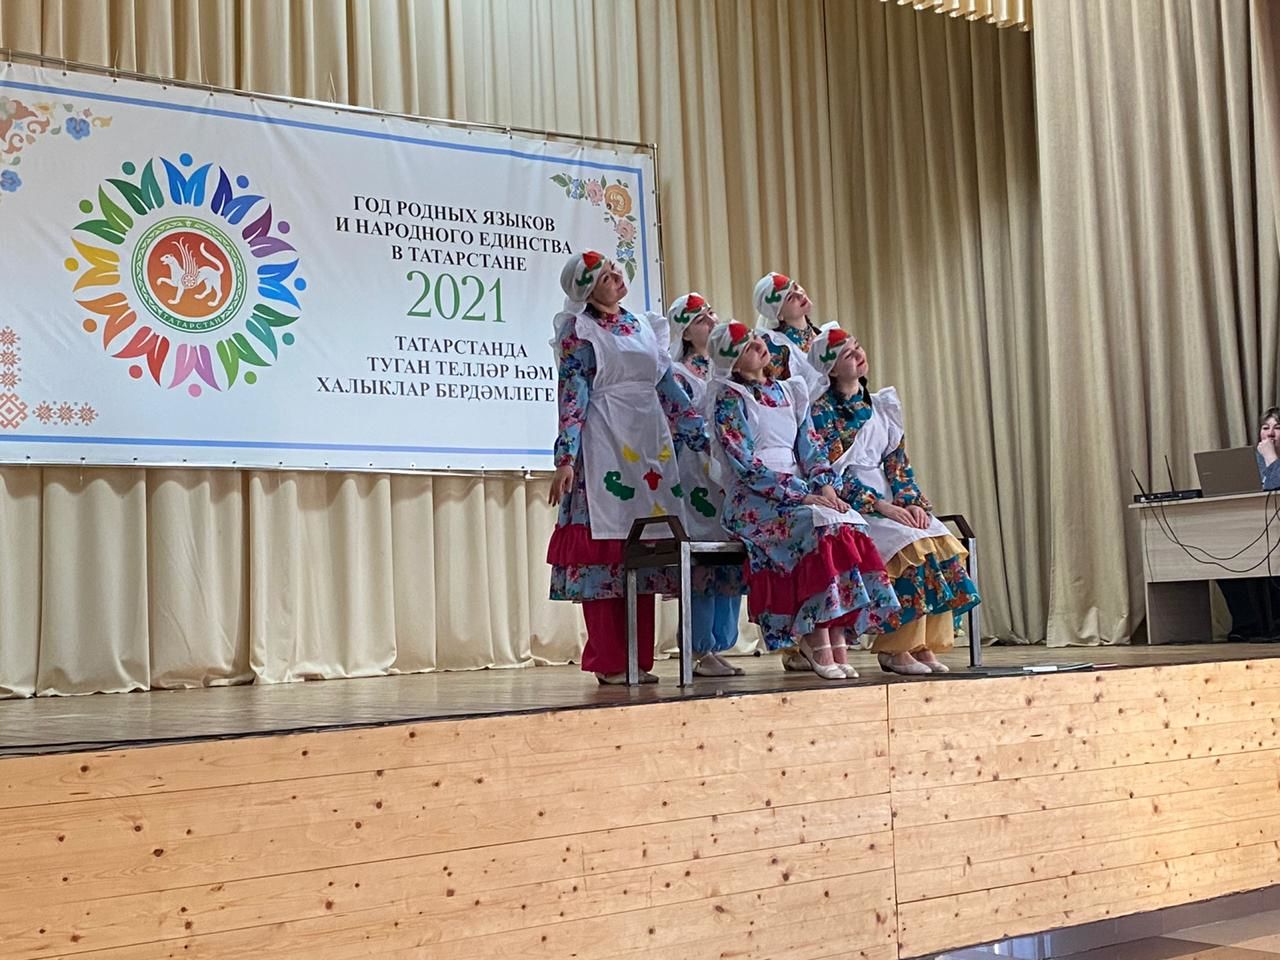 В Агрызе продолжаются мероприятия, посвященные Году родных языков и народного единства